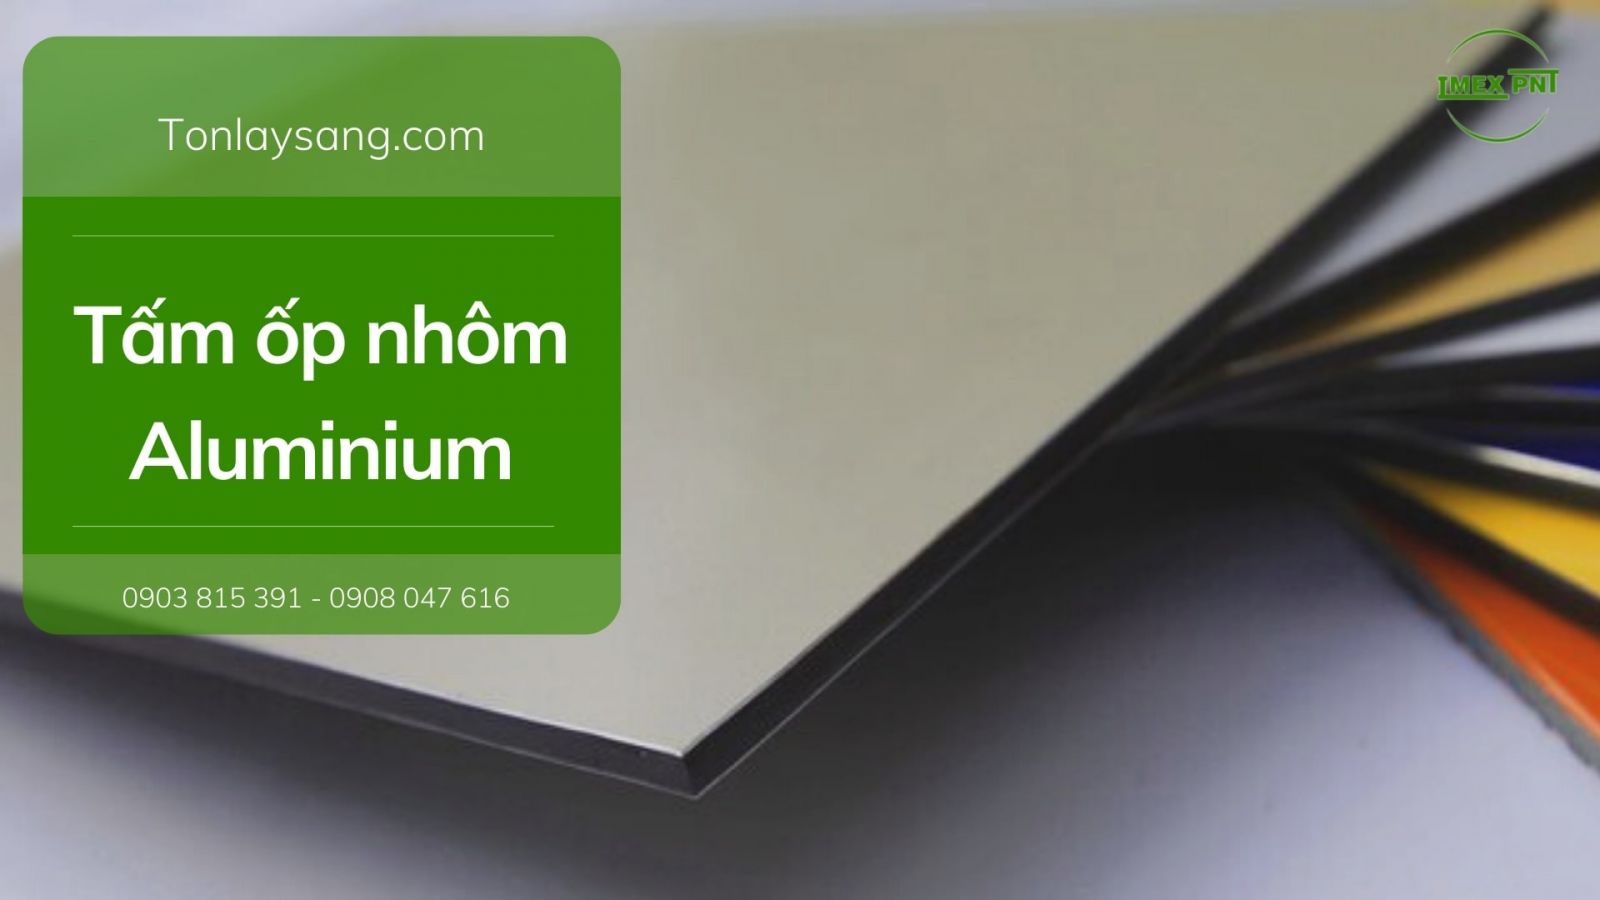 Tấm ốp nhôm aluminium là gì